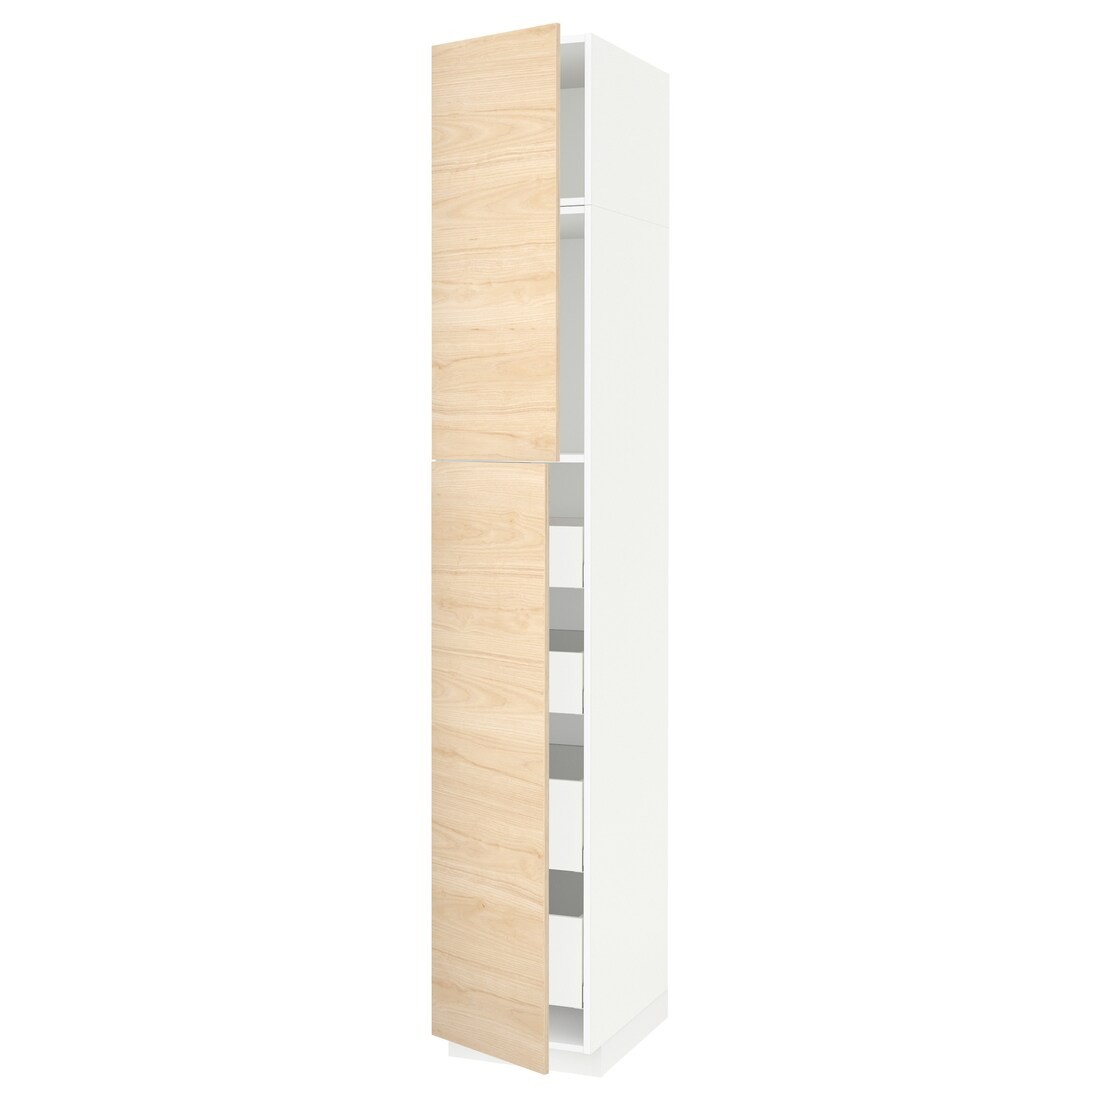 IKEA METOD МЕТОД / MAXIMERA МАКСИМЕРА Шкаф высокий 2 двери / 4 ящика, белый / Askersund узор светлый ясень, 40x60x240 см 19454939 | 194.549.39